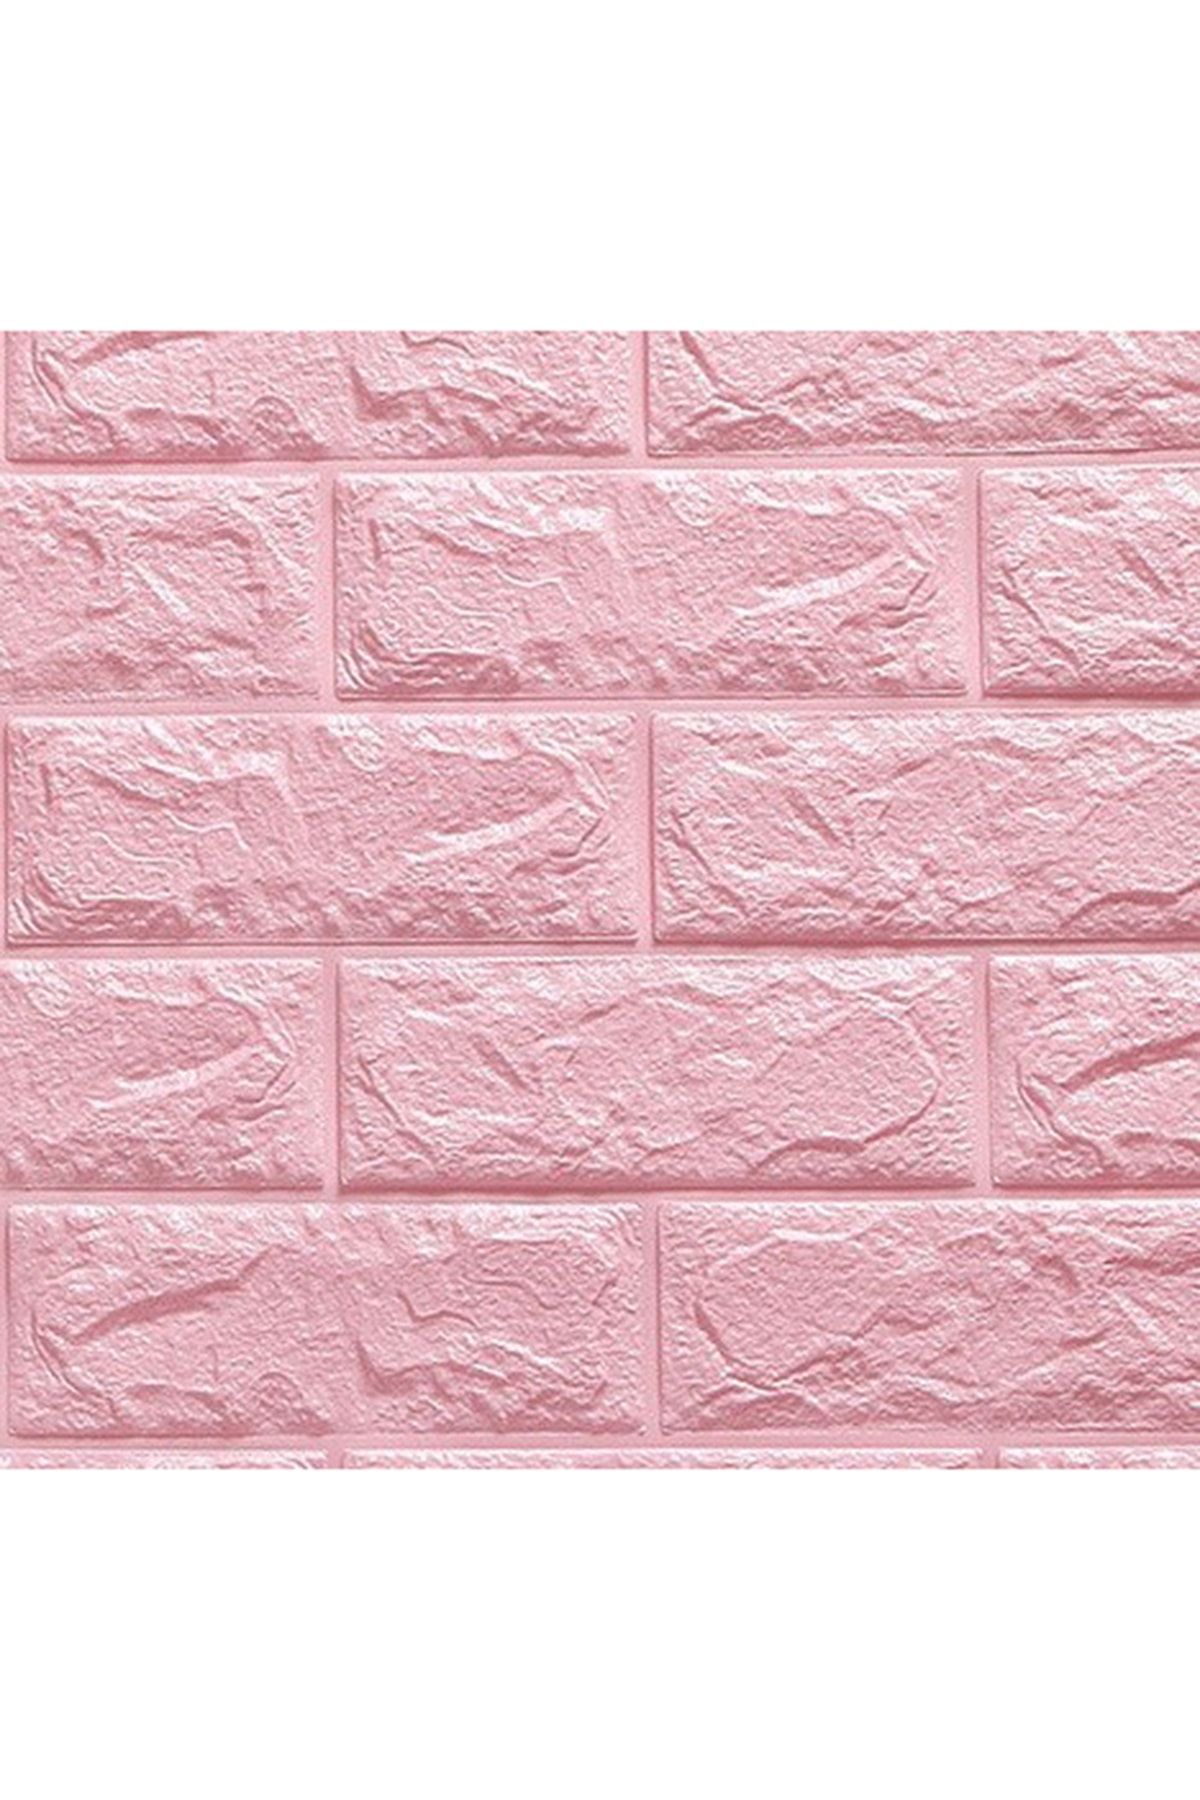 Renkli Duvarlar 3D Tuğla Panel 70x77 cm 4 Adet Kendinden Yapışkanlı Dekoratif Esnek Duvar Kaplama Paneli